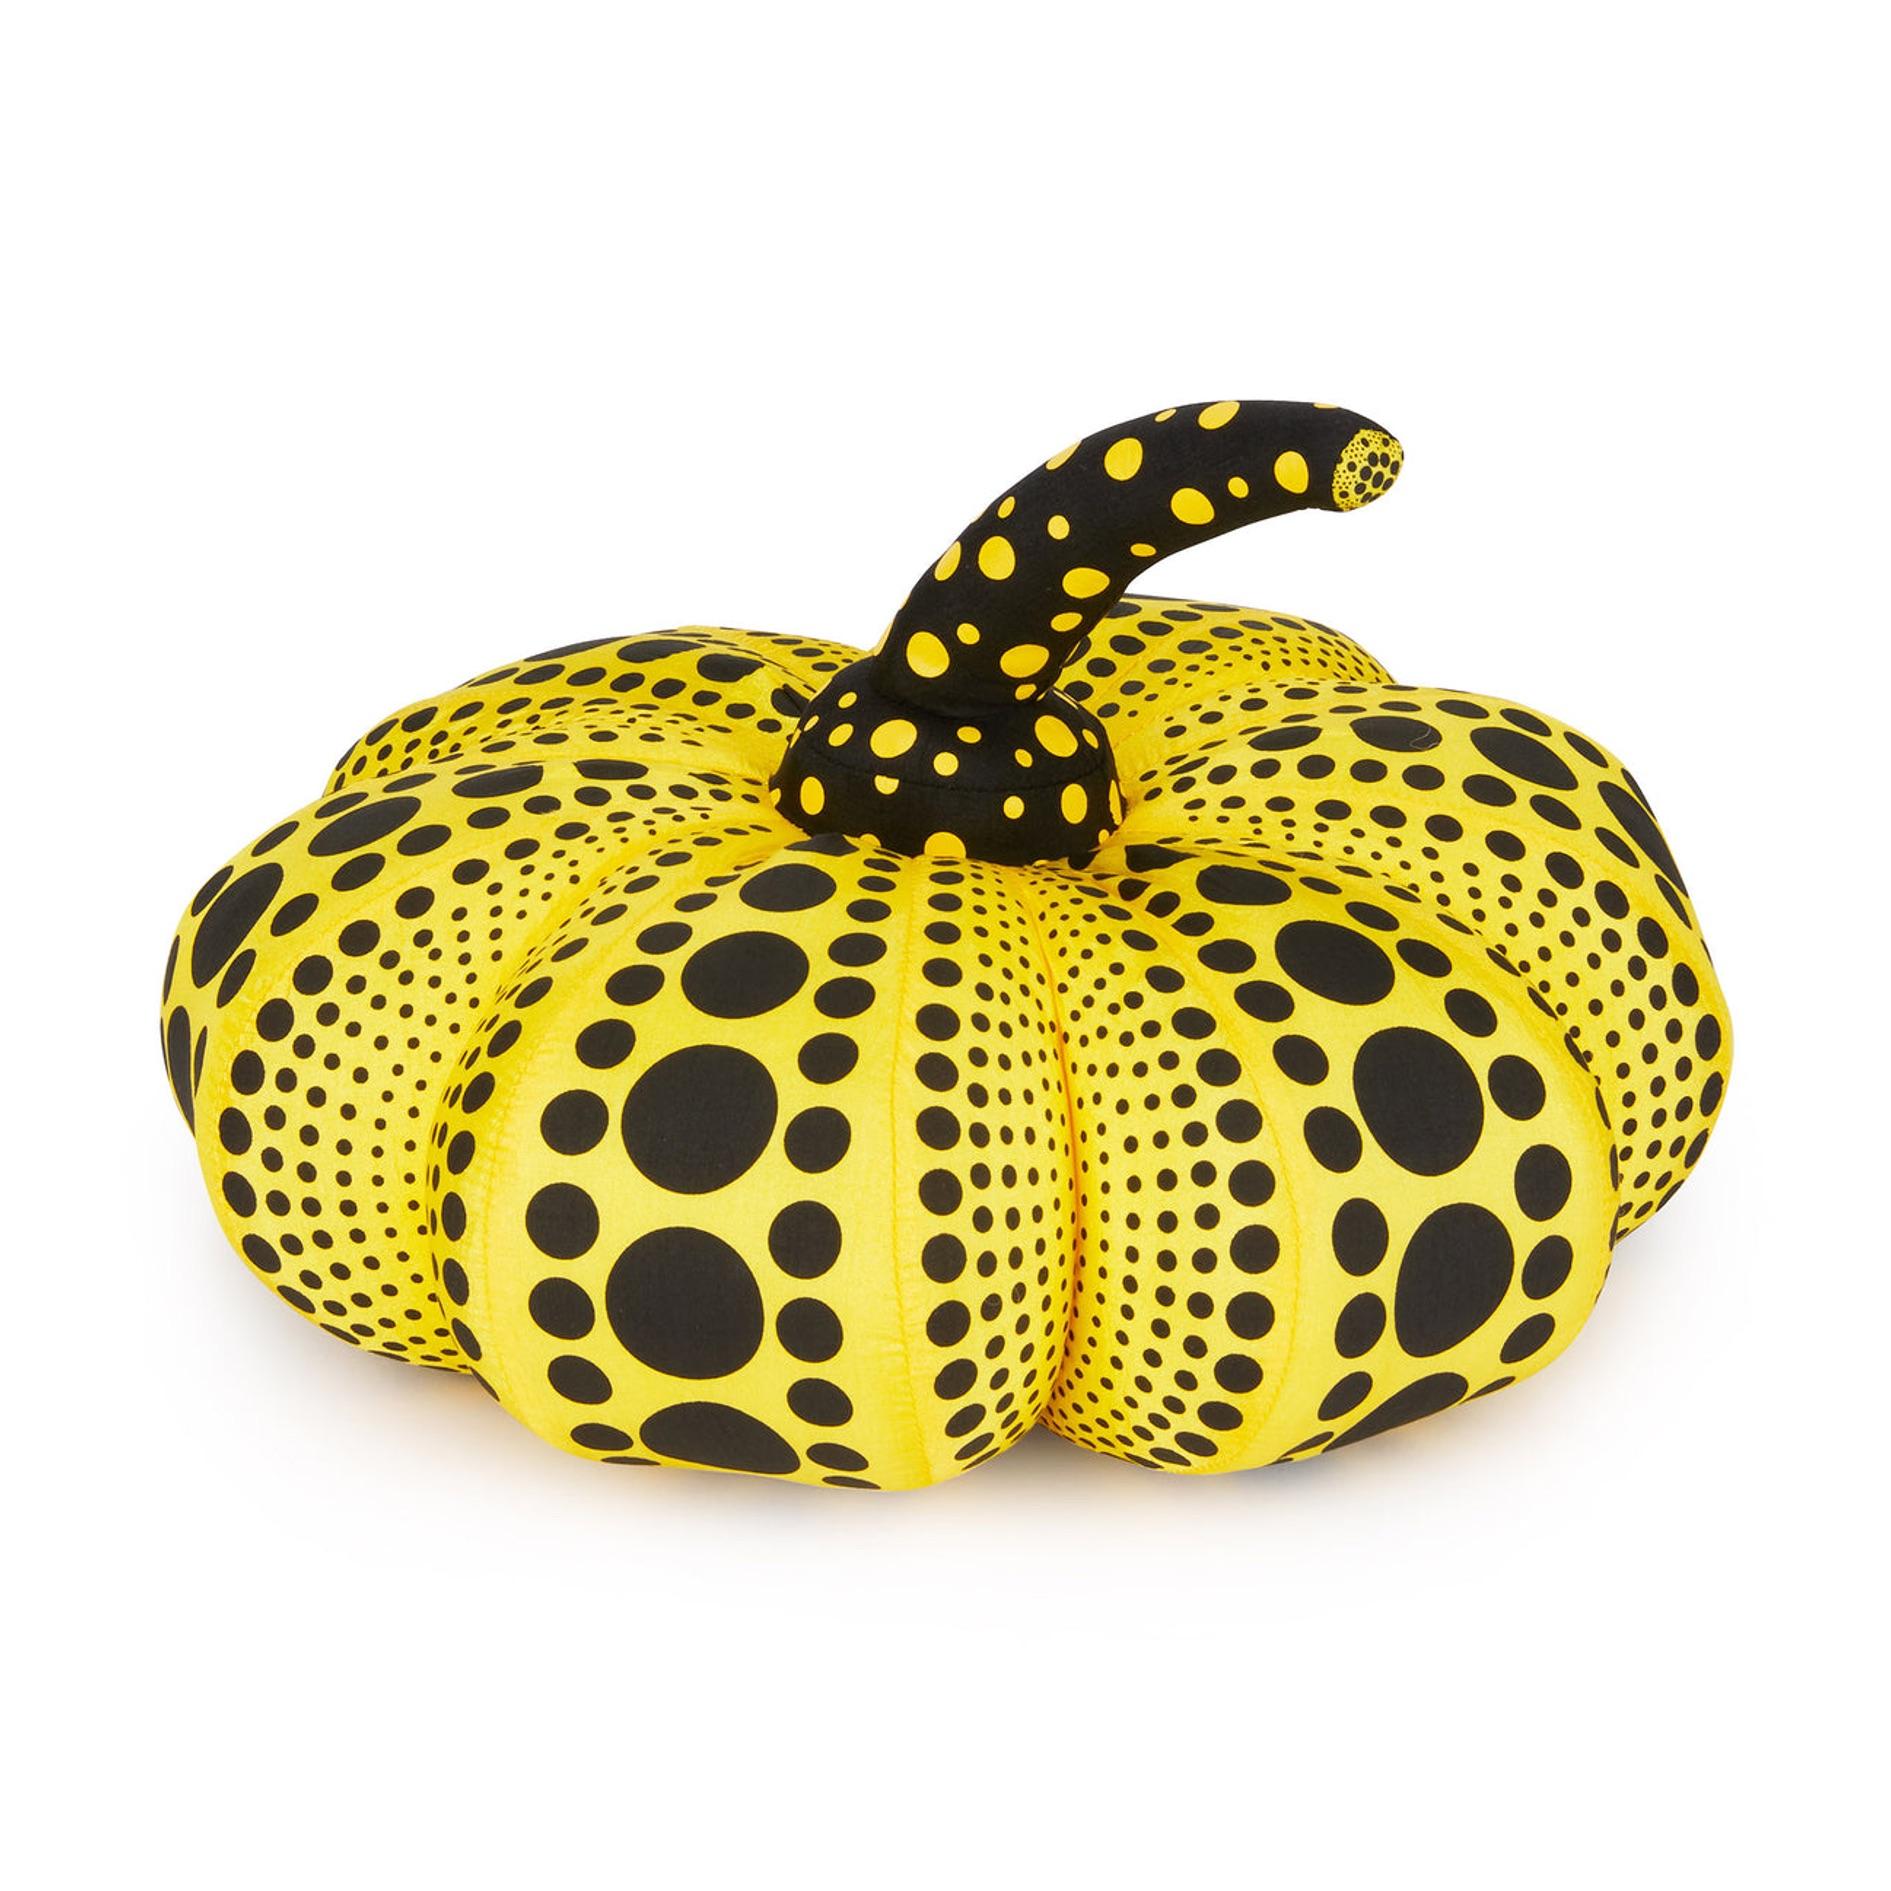 Yayoi Kusama
Pumpkin Plush Yellow (Small), 2004
Nylon
6 x 9 2/5 in diameter  15.24 x 24 cm diameter
